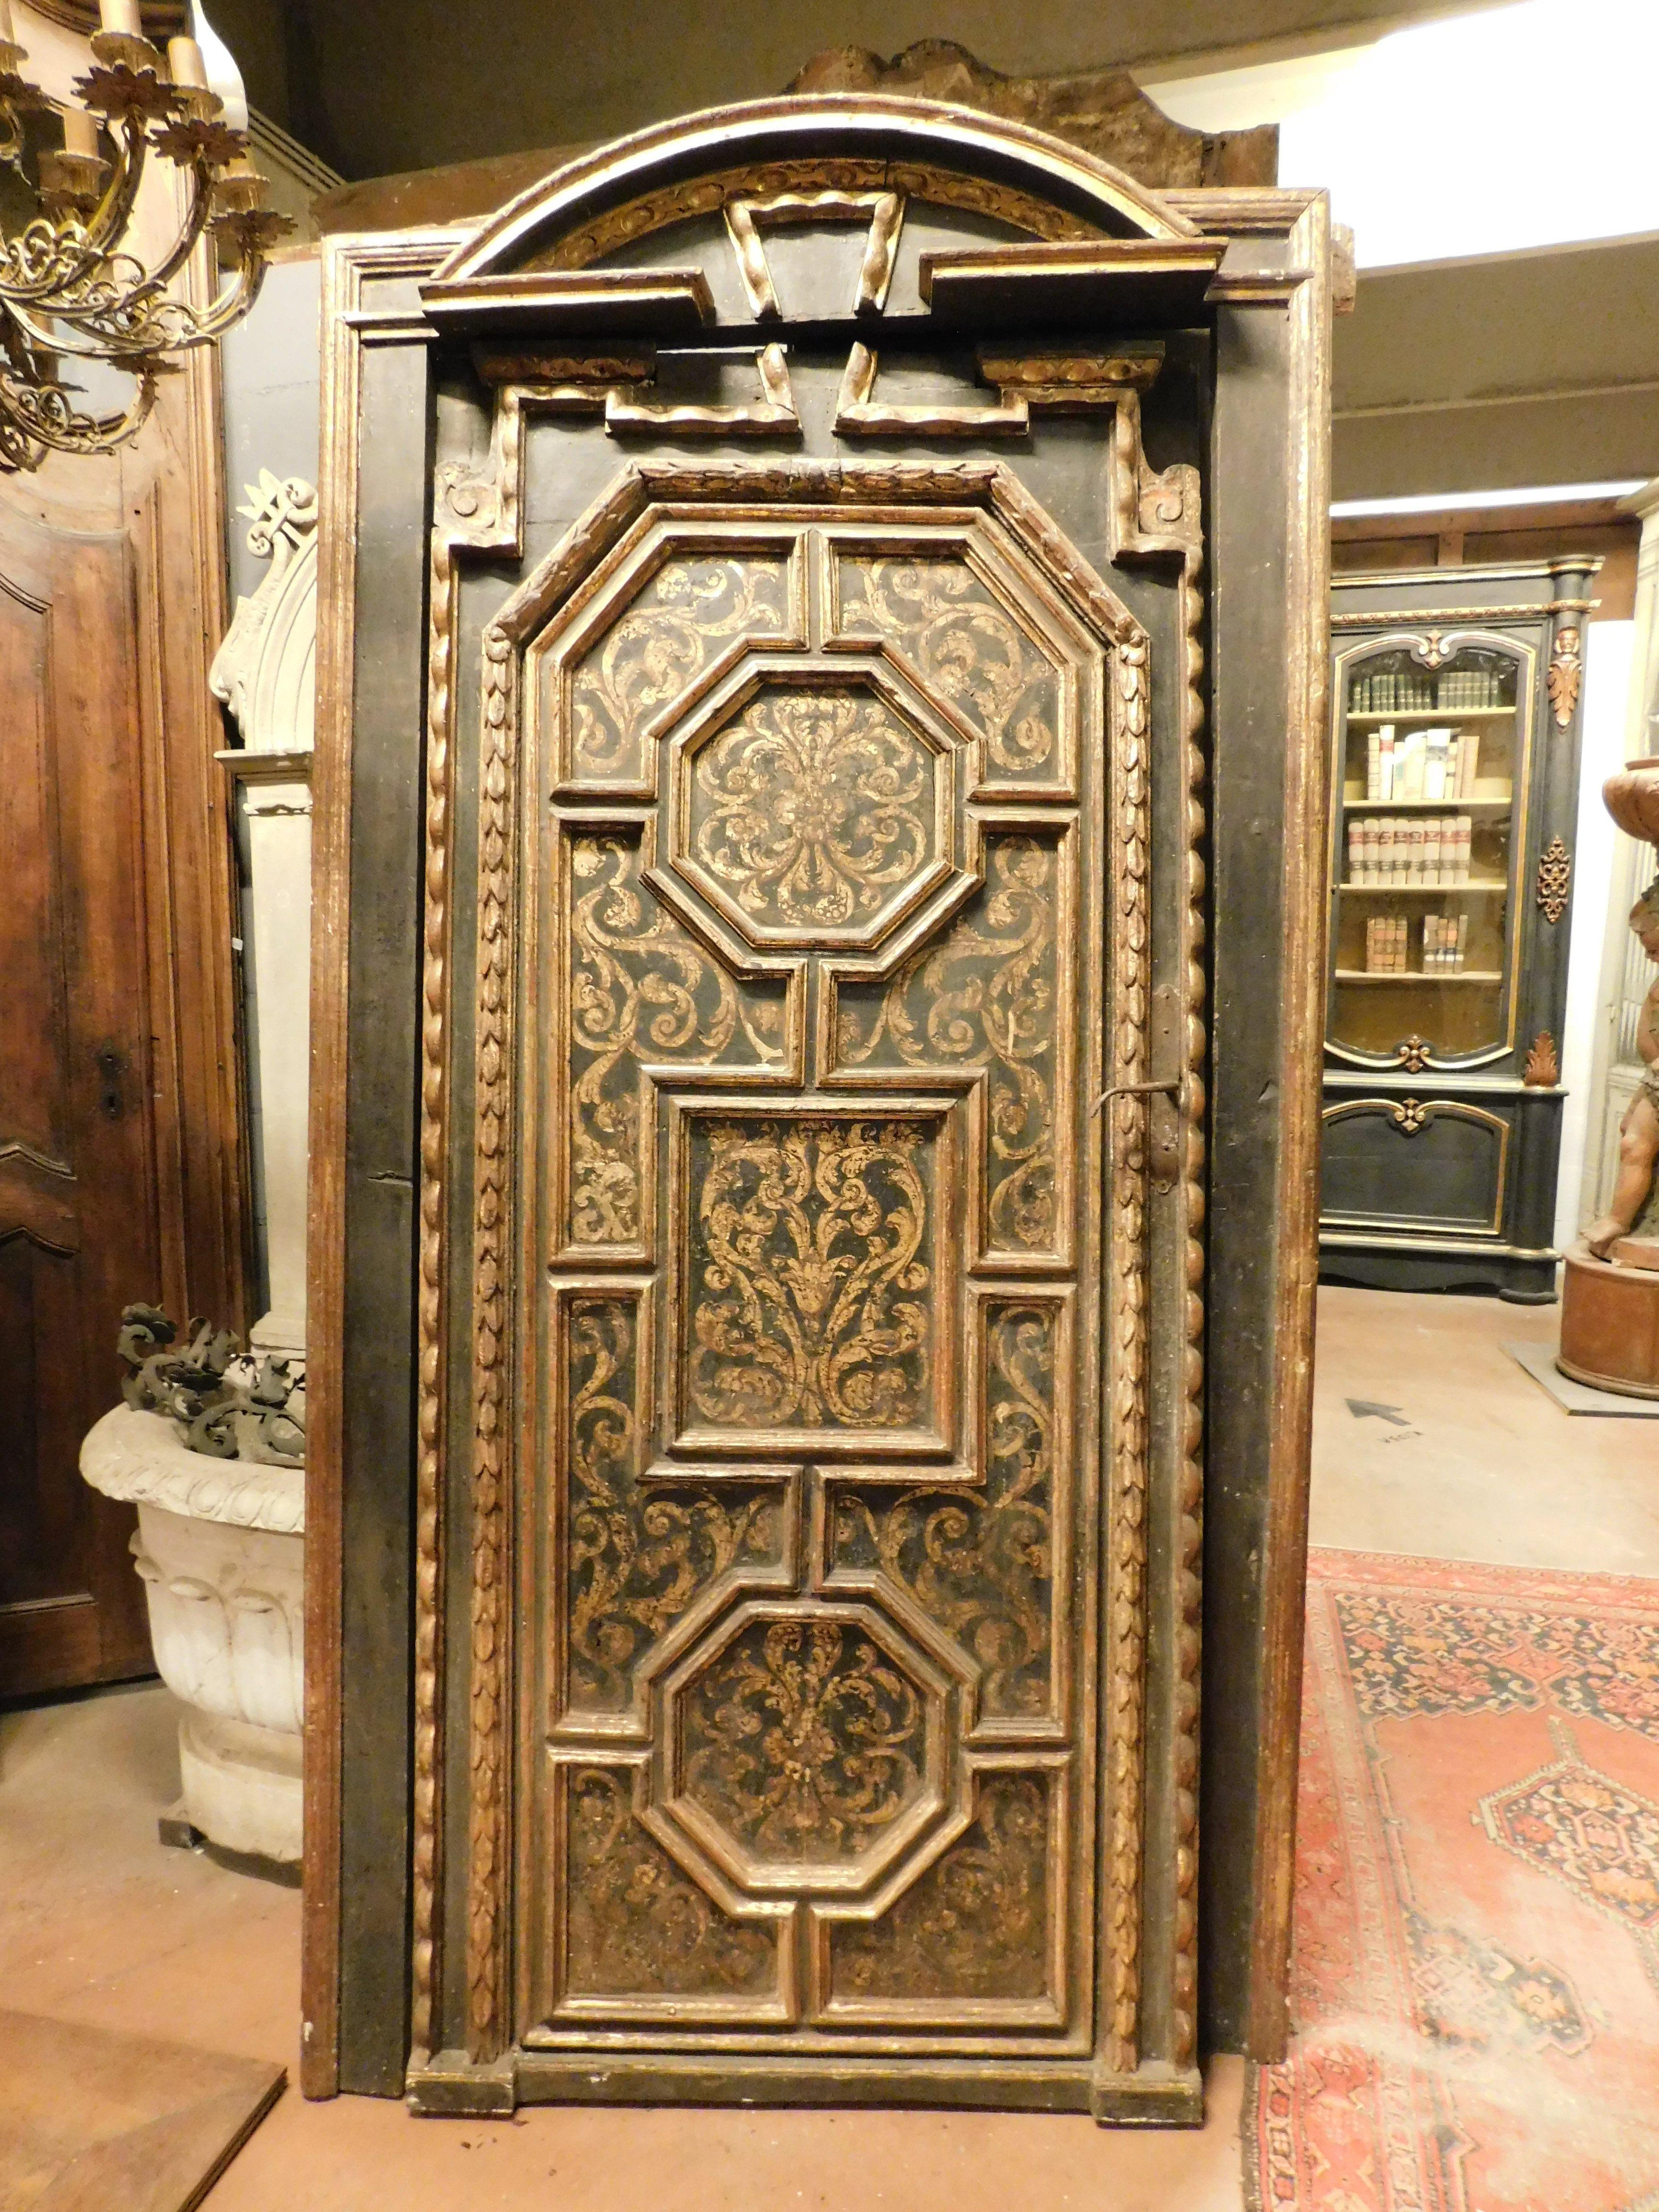 Ancienne paire de portes d'intérieur, ensemble de deux portes sculptées, laquées et dorées, avec précieux encadrement sculpté d'origine, dorure à la feuille avec décoration baroque, réalisées au XVIIIe siècle, de Florence (probablement deux portes